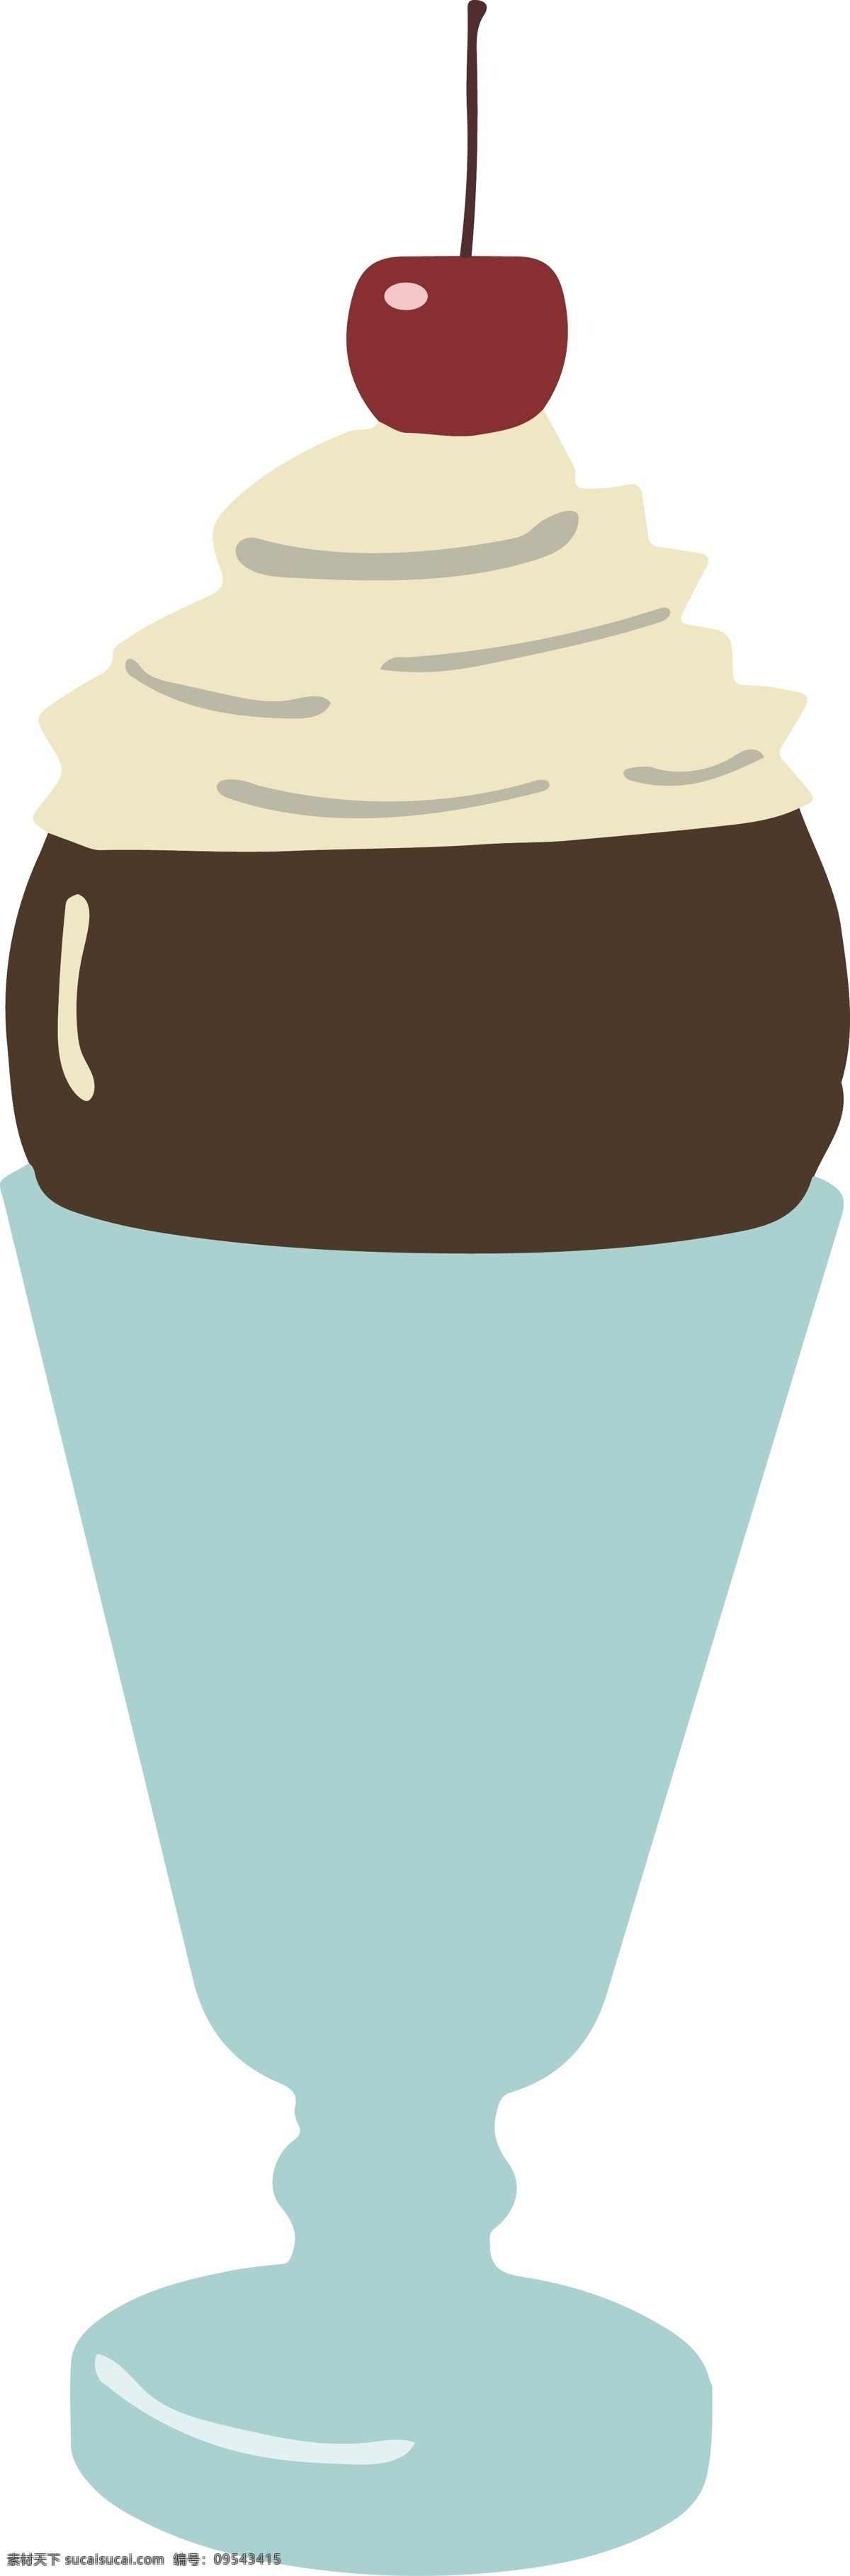 夏日 卡通 冰淇淋 图形 商用 元素 清凉 食物 甜筒 夏日冰淇淋 解暑